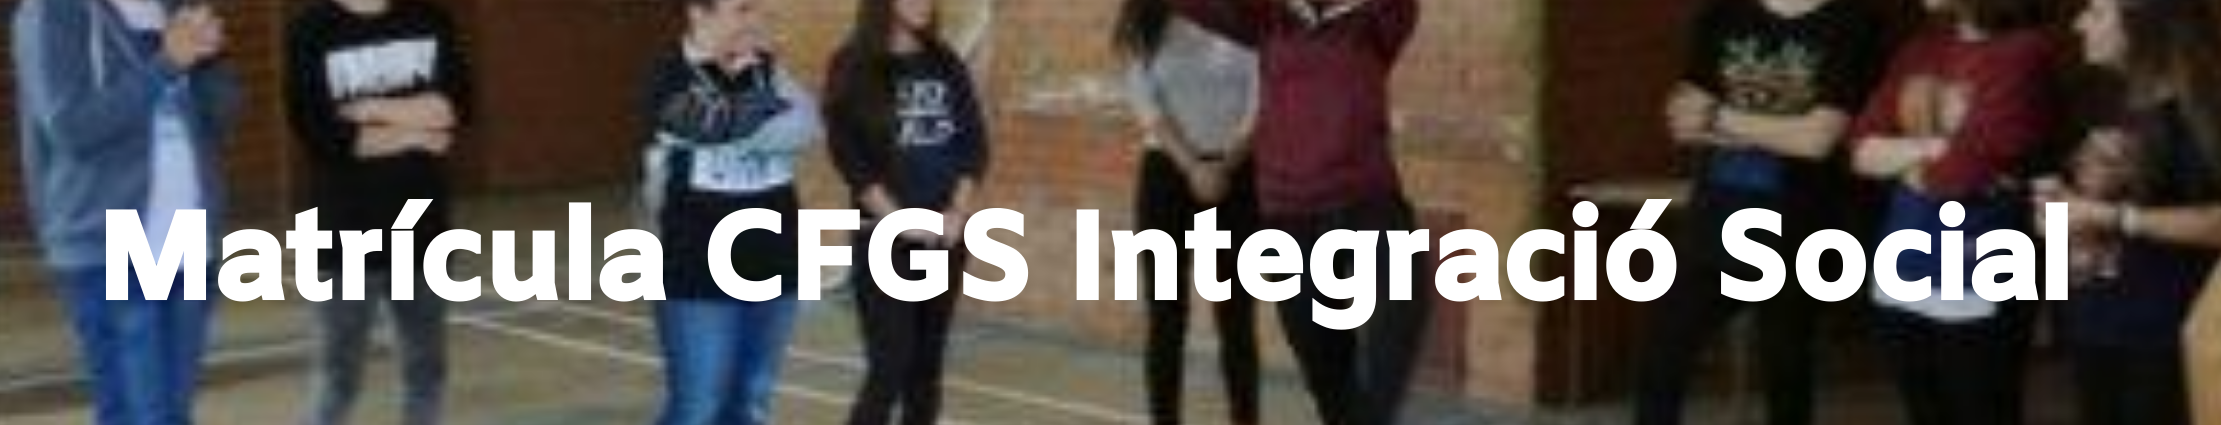 Matrícula CFGS Integració Social banner